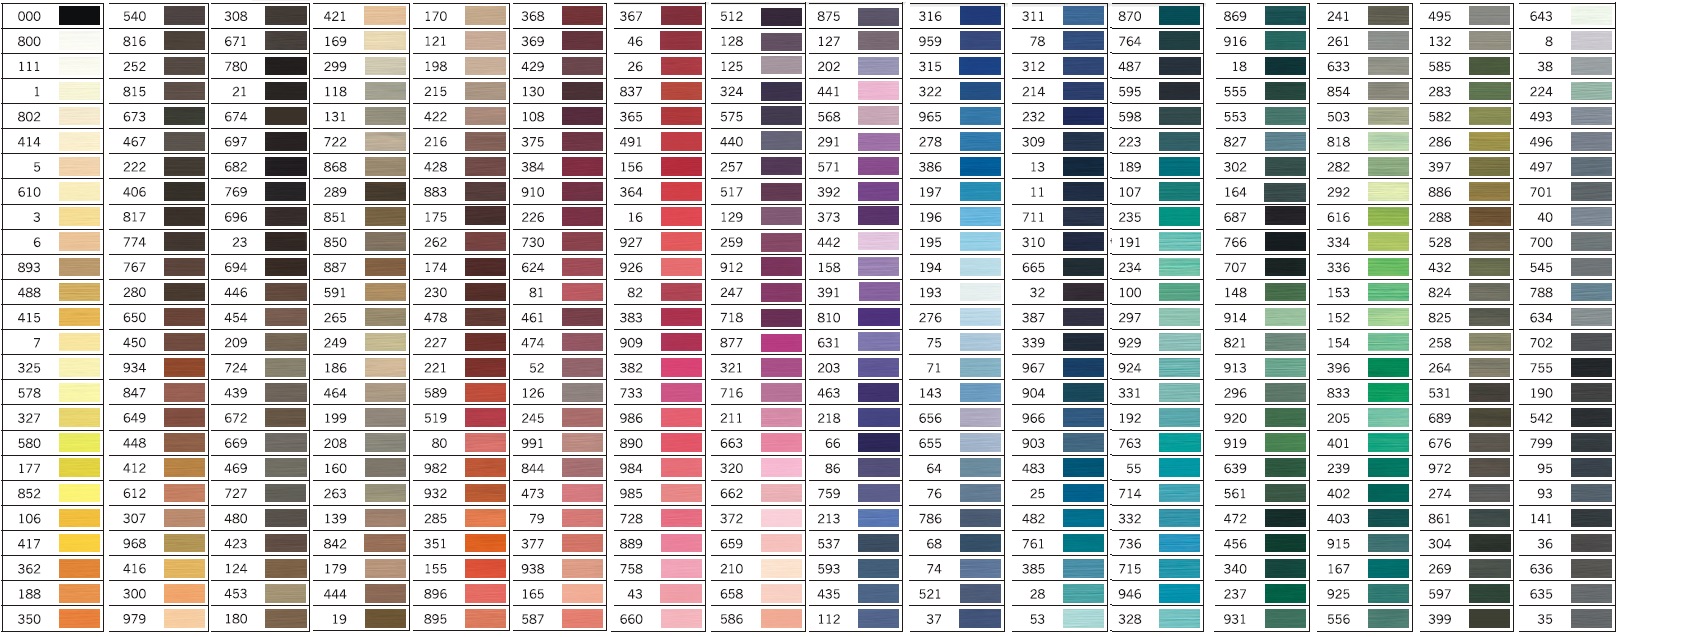 Gutermann Sewing Thread Colour Chart